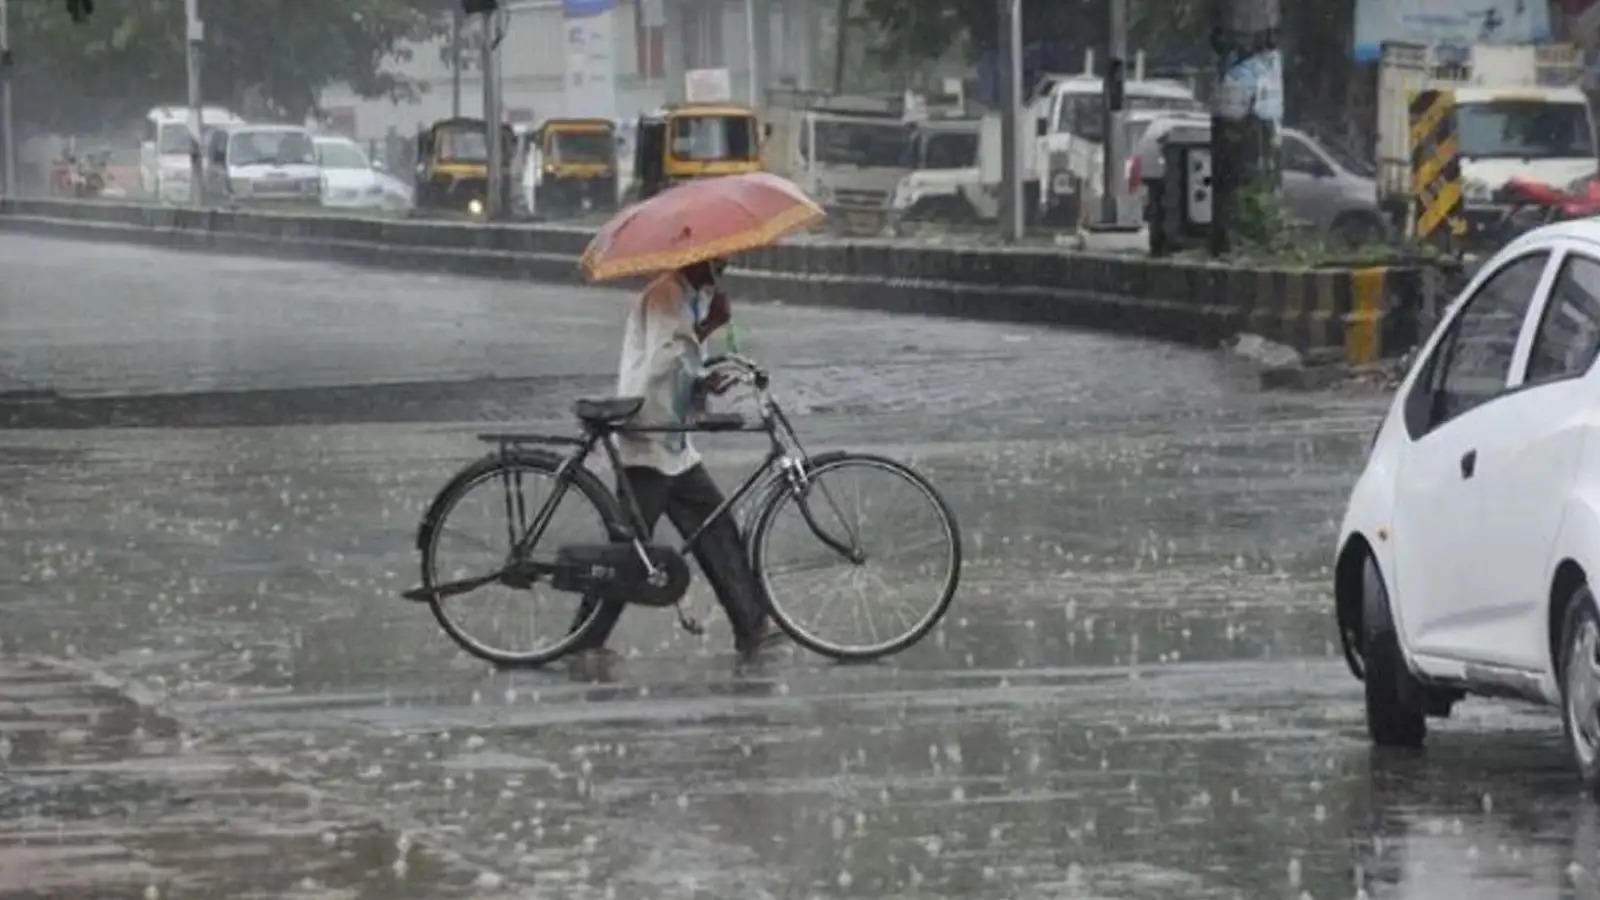 Uttarakhand Weather Update : अभी नहीं मिलेगी बारिश से राहत, देहरादून समेत इन जिलों के लिए जारी हुआ भारी बारिश का अलर्ट